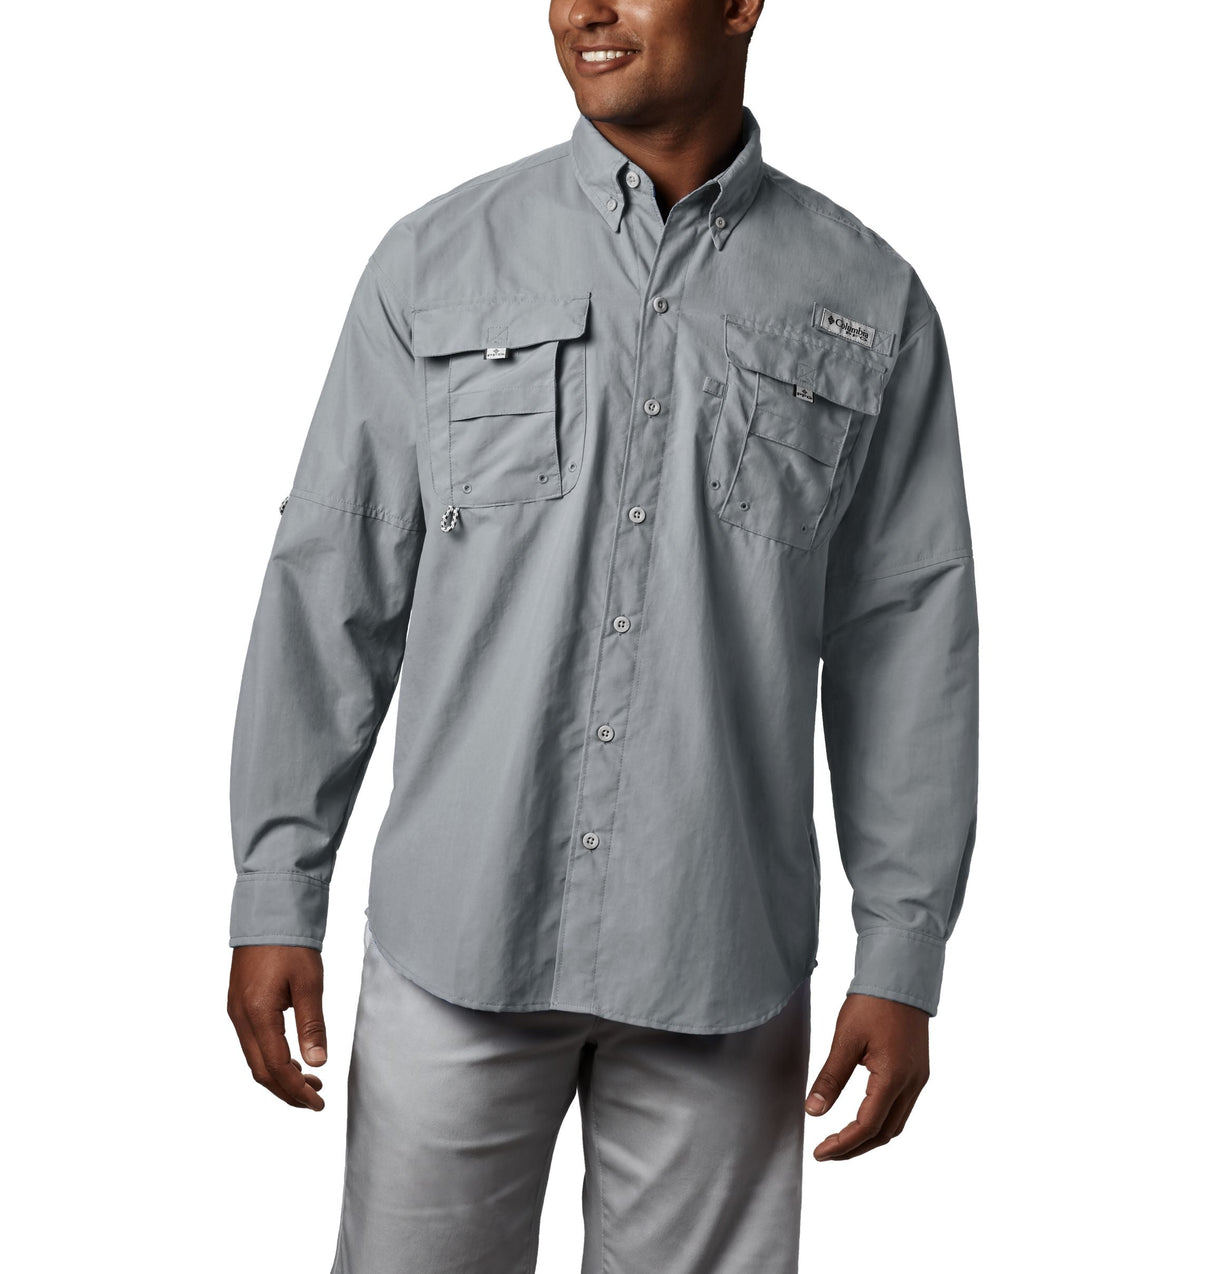 Columbia Men’s PFG Bahama™ II Long Sleeve Shirt